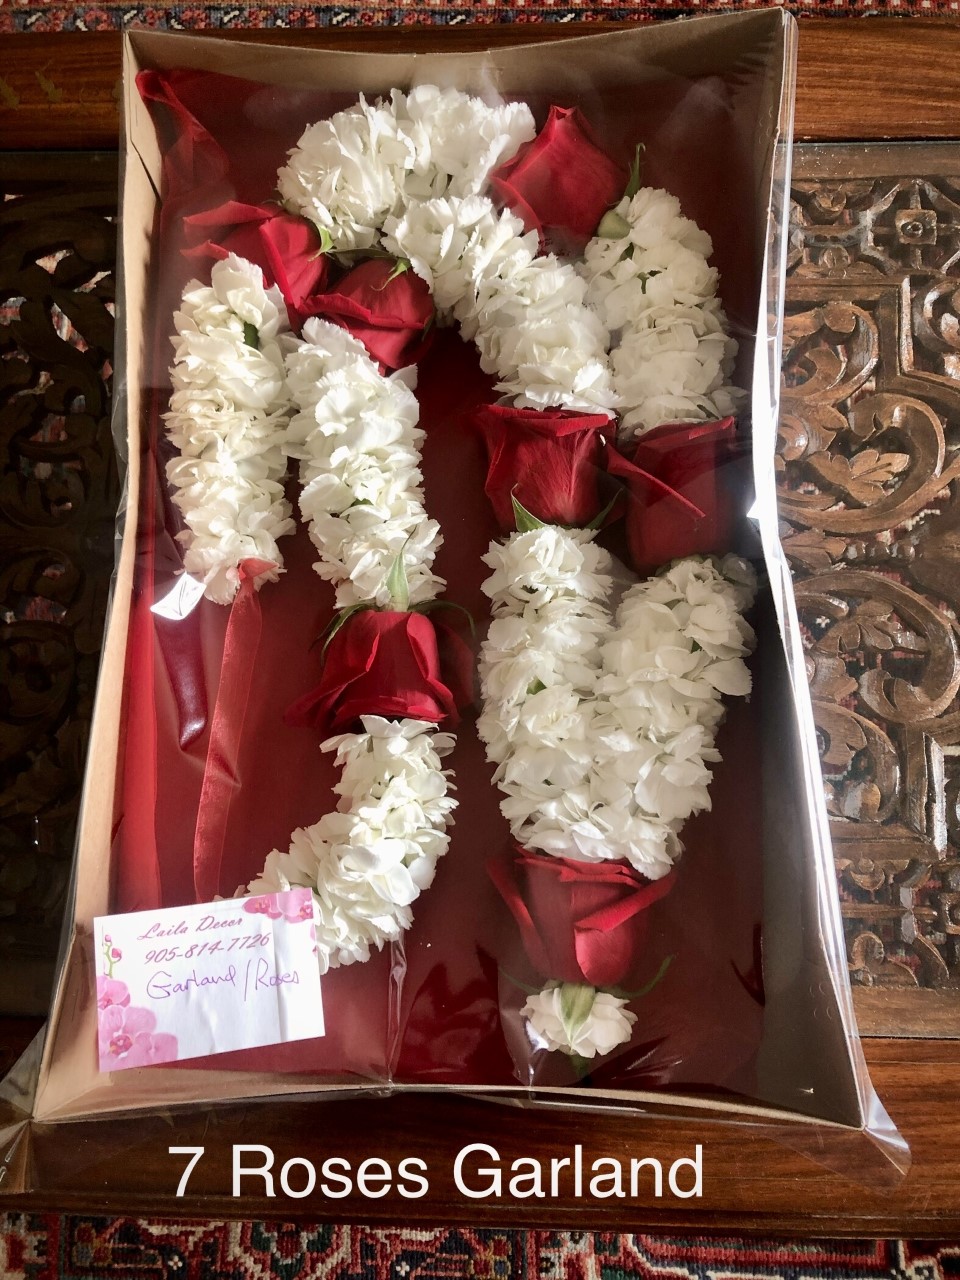 7 Roses garland in box $97.50 